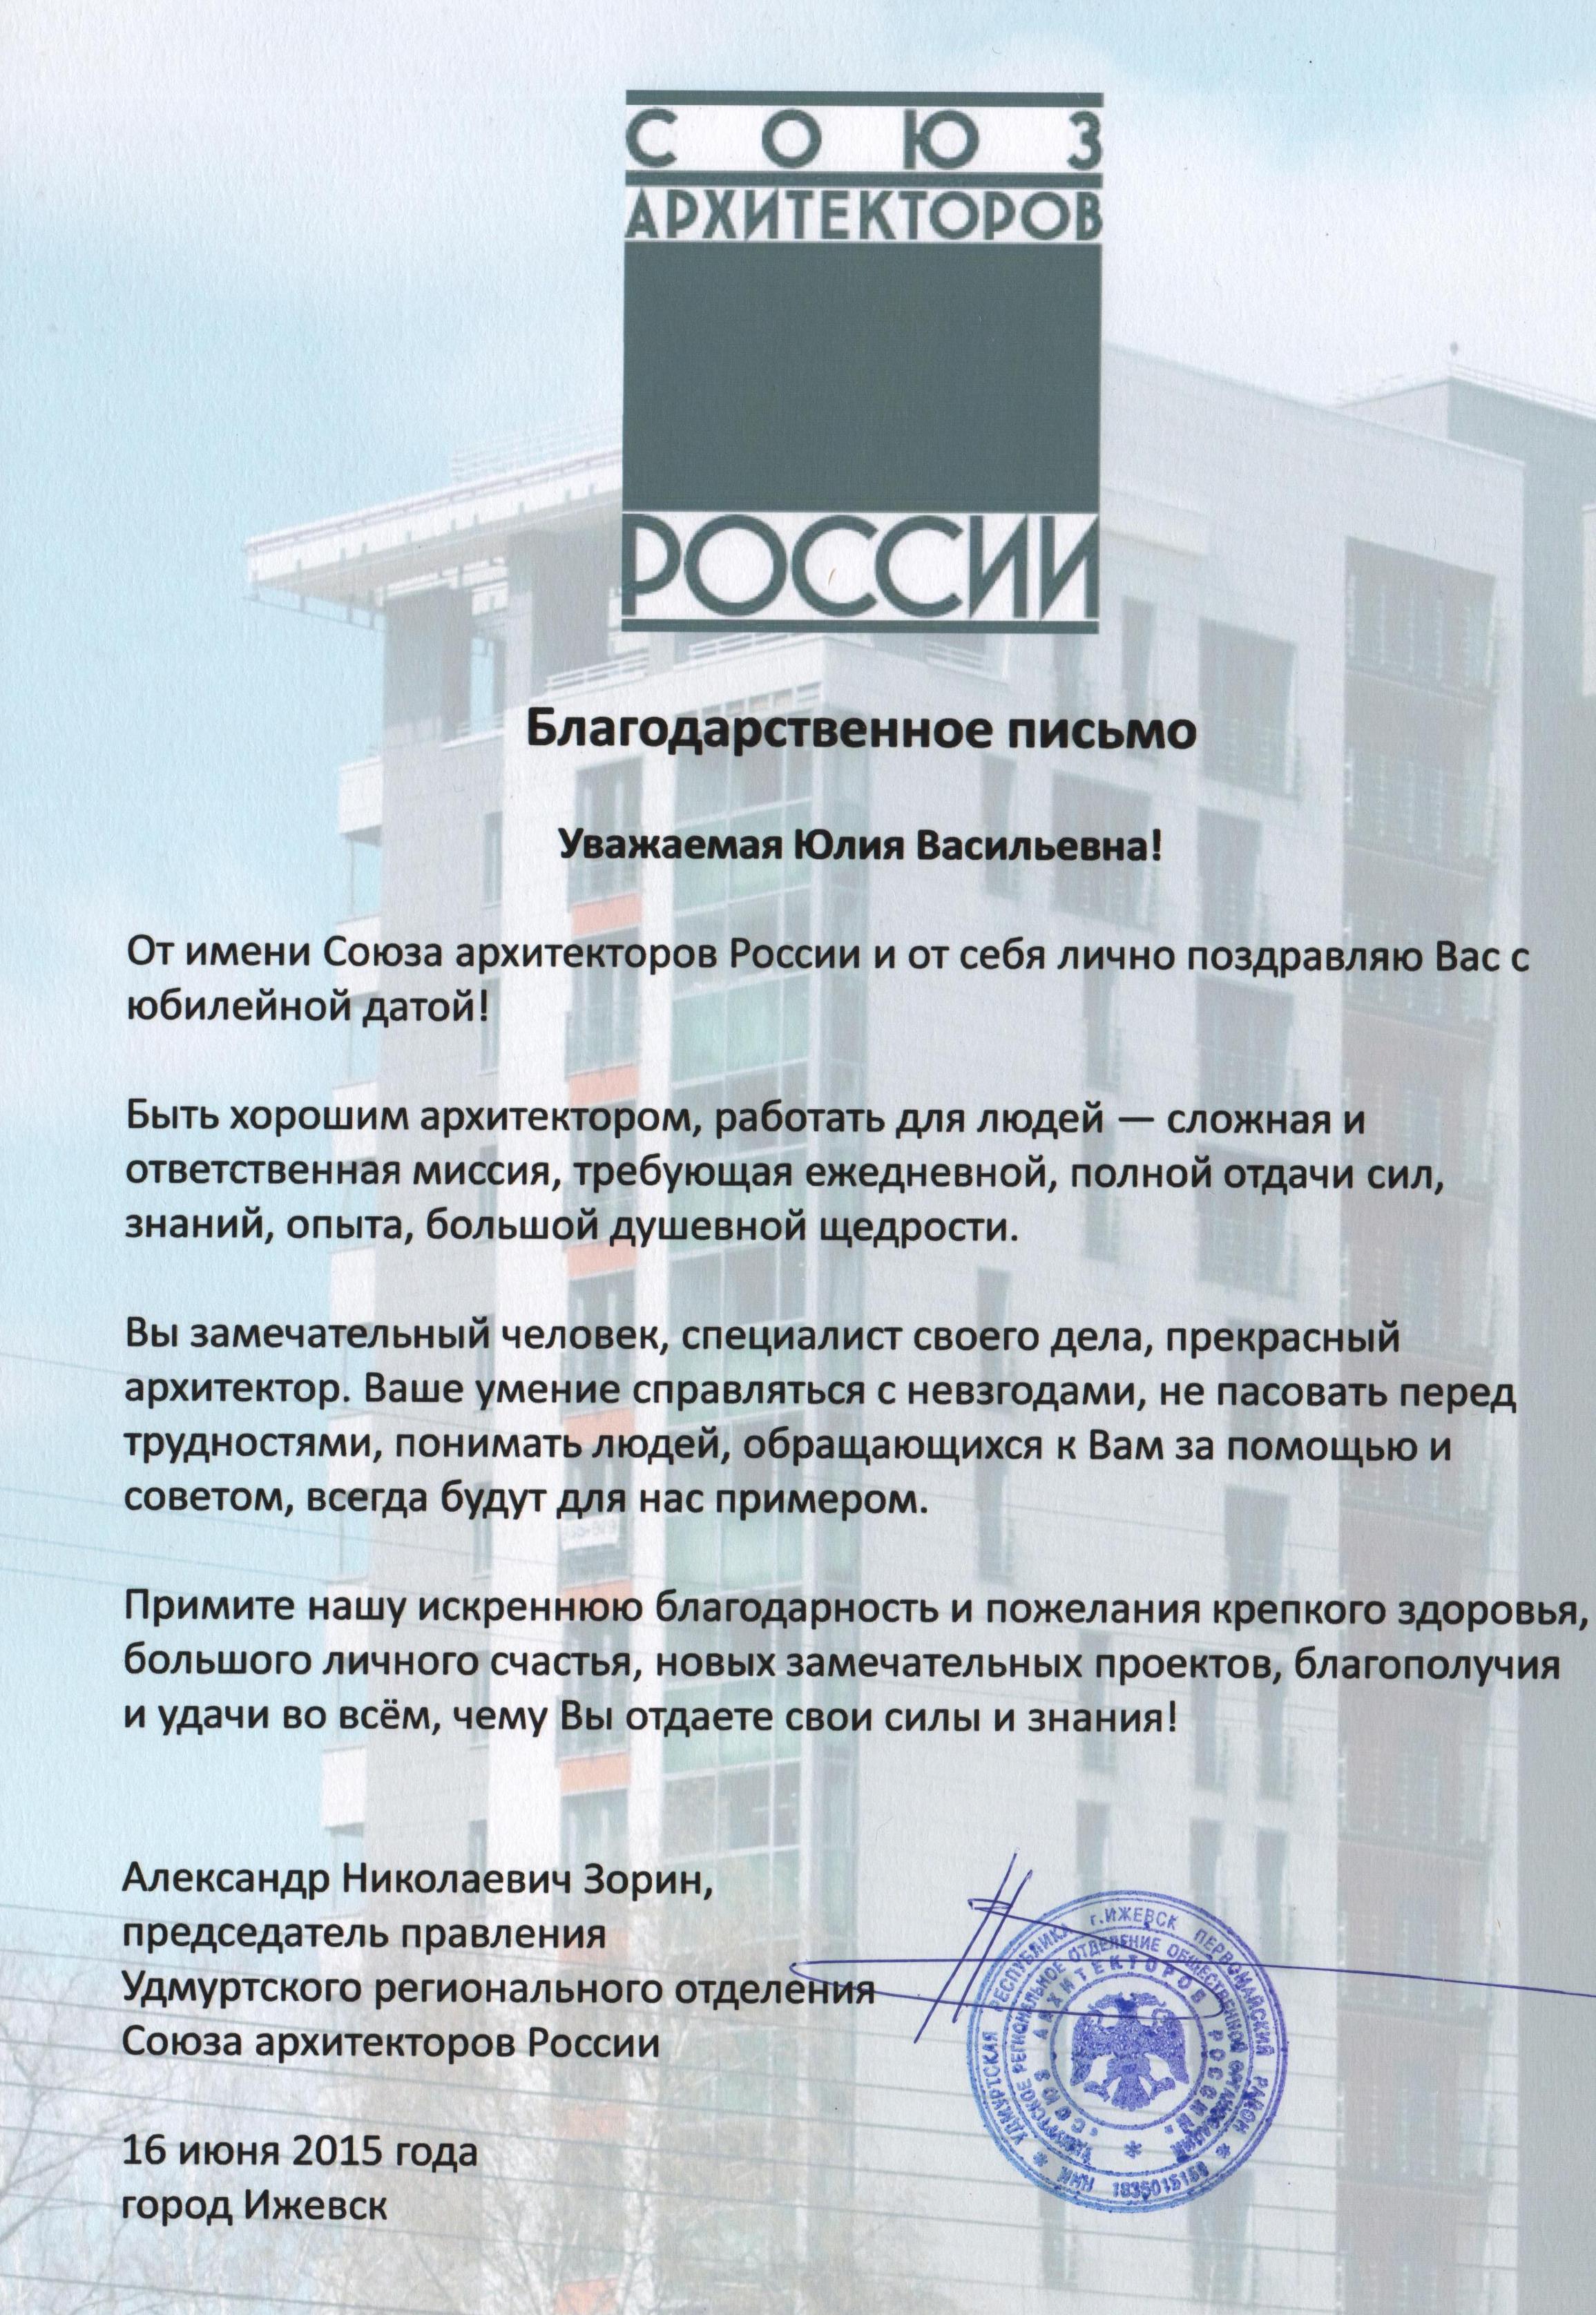 Благодарственное письмо от Удмуртского регионального отделения Союза архитекторов России за многолетний труд (2015)